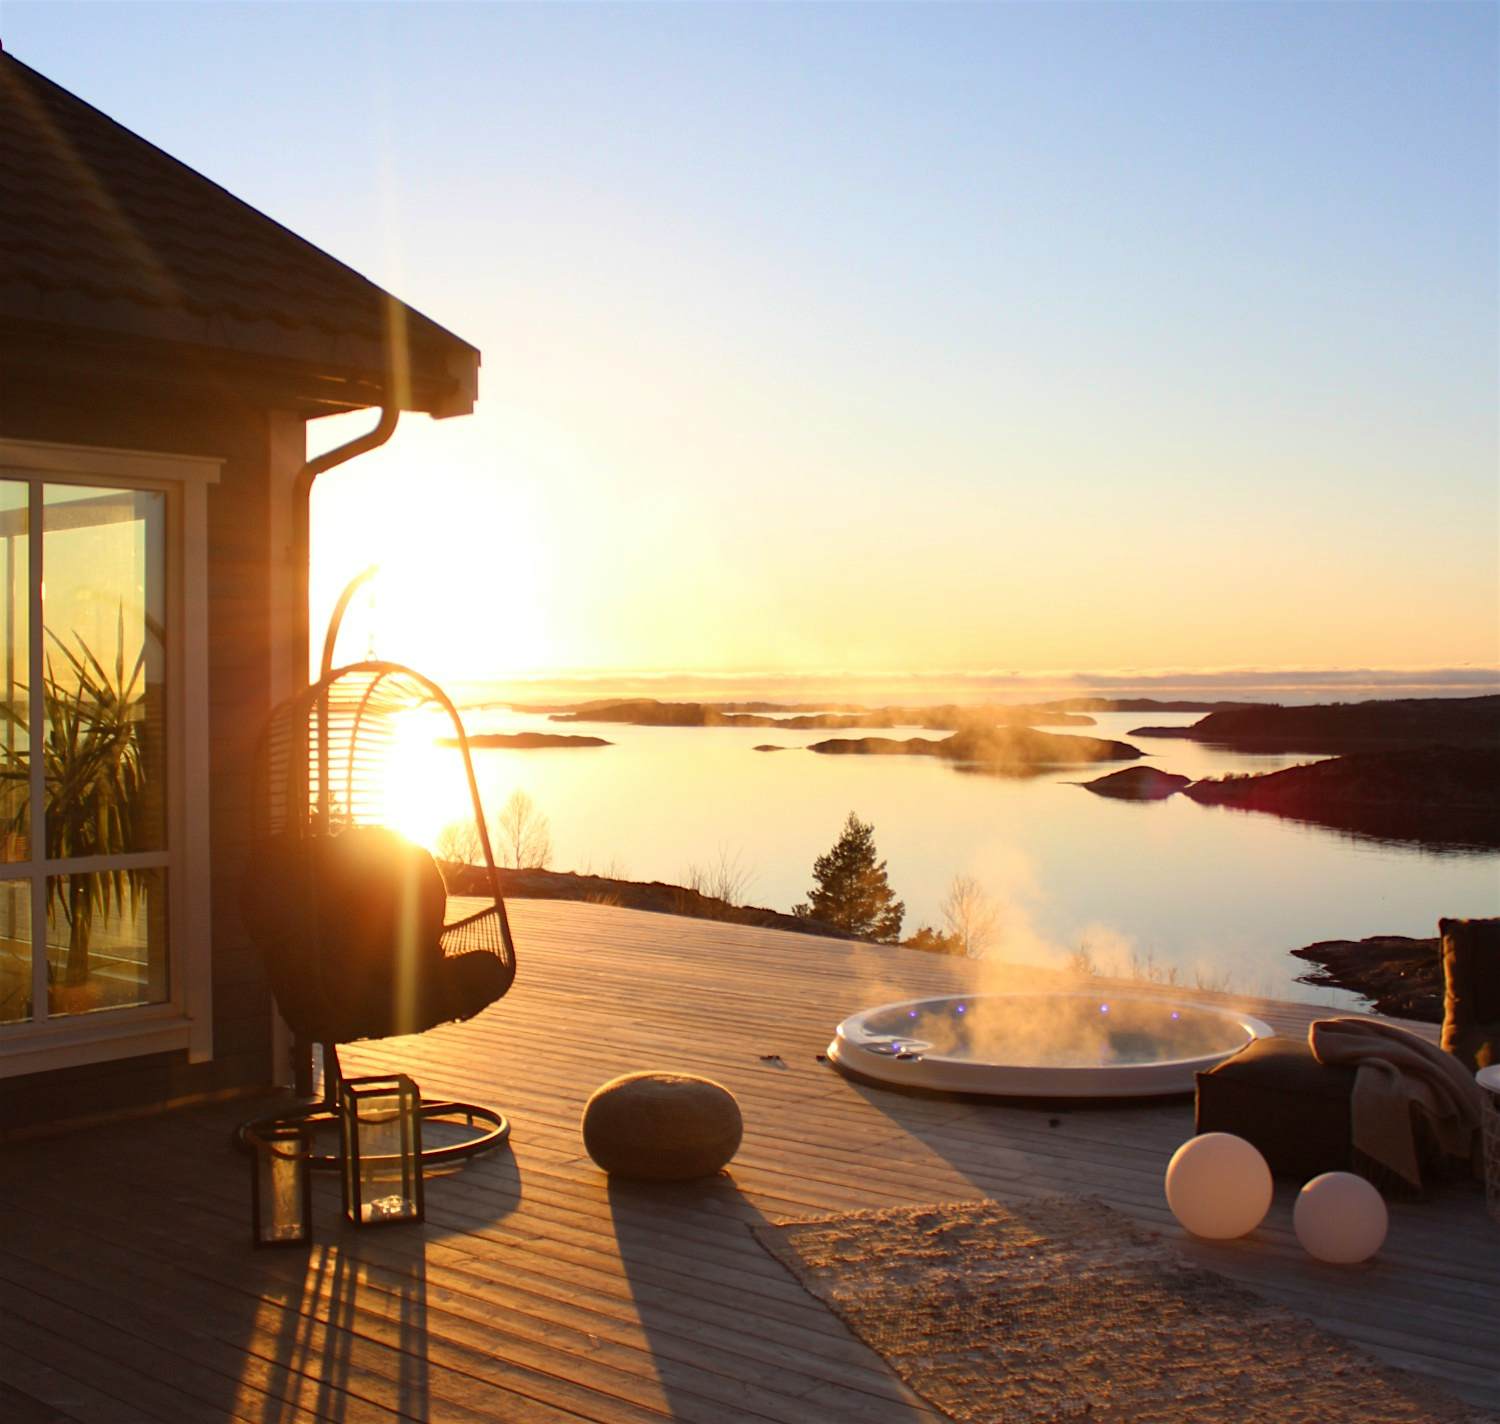 A Norwegian cabin overlooking the sea